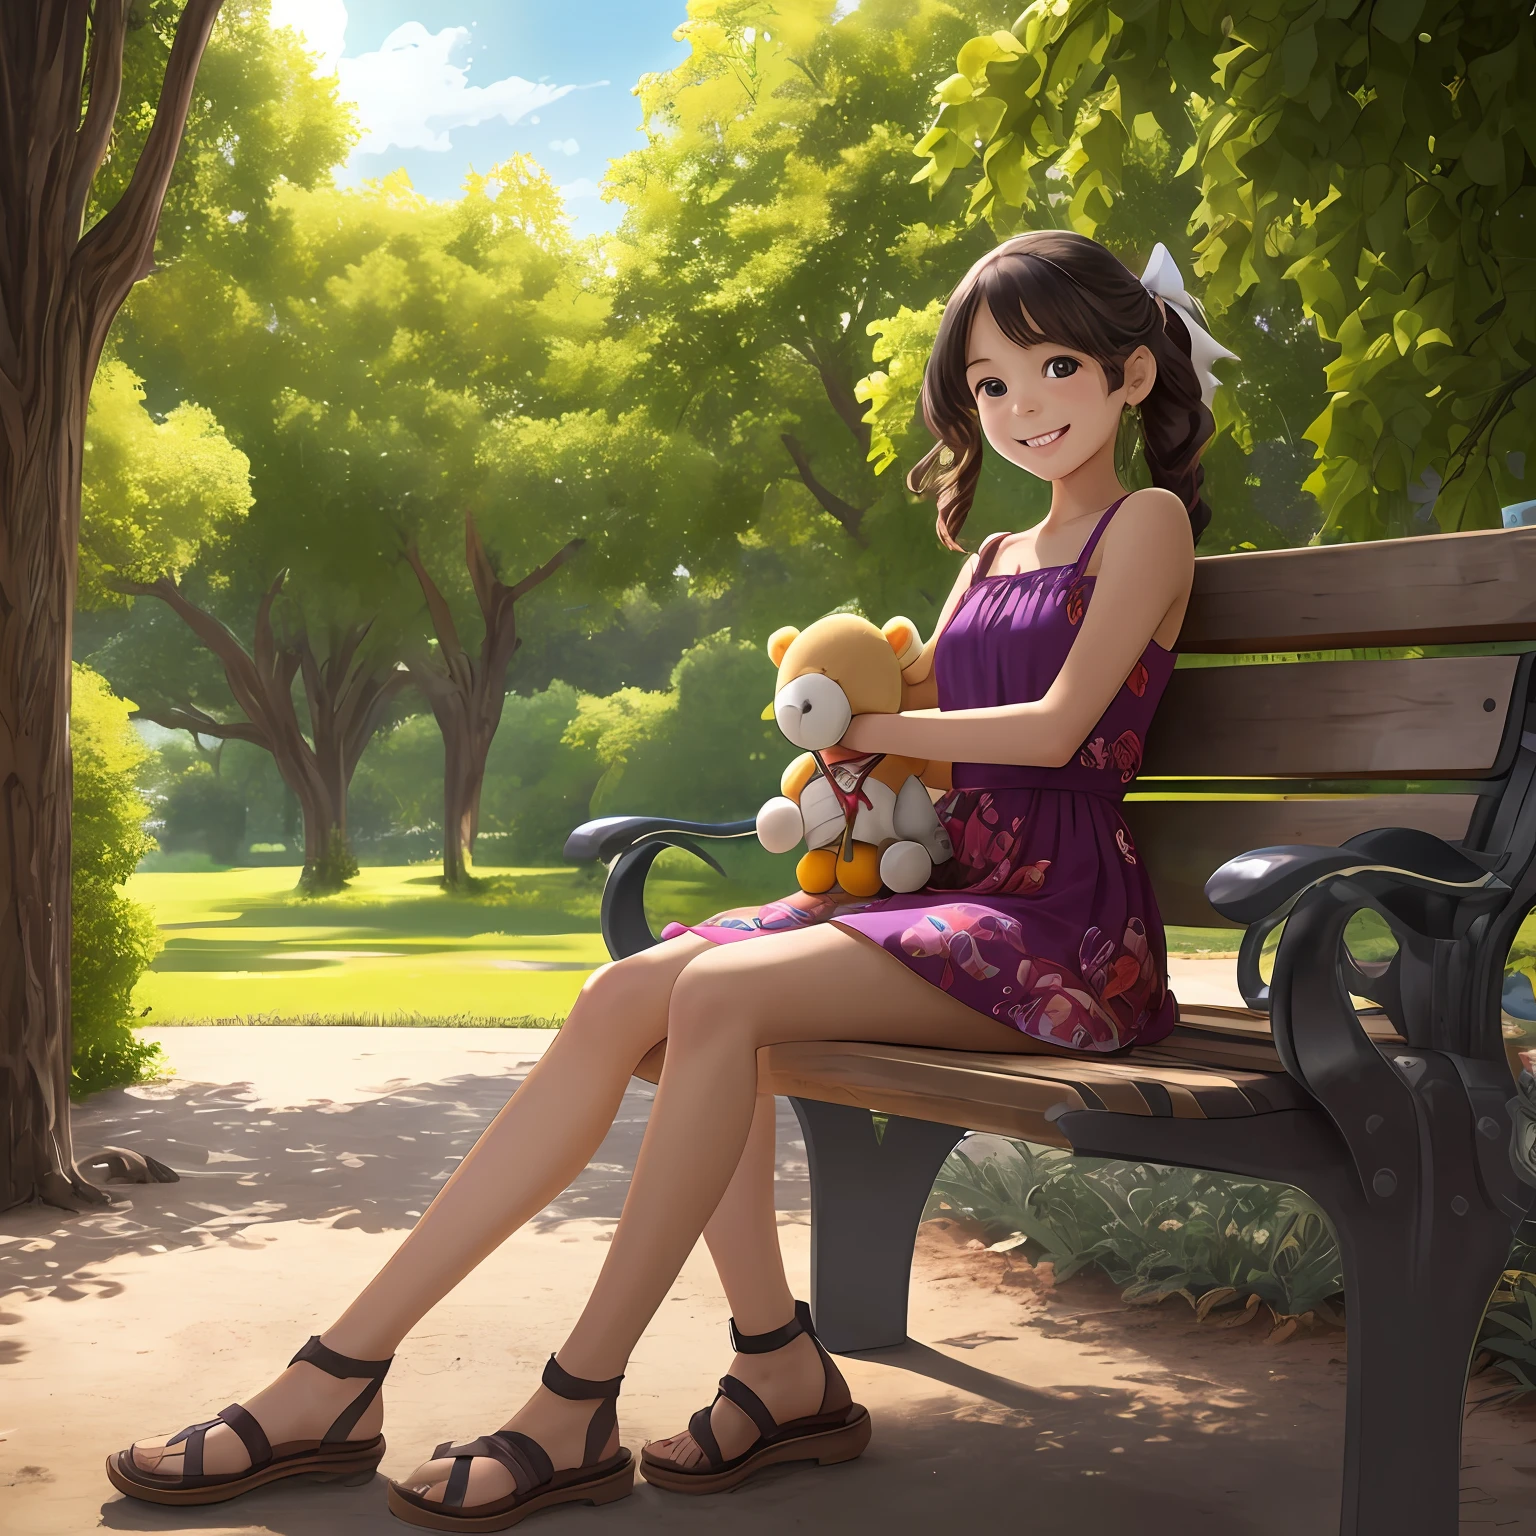 Une image incroyablement réaliste représentant une jeune fille assise sur un banc de parc, entourée de ses jouets préférés. La fille a un sourire contagieux, ses yeux brillants pétillant de joie lorsqu&#39;elle interagit avec ses jouets. Elle porte une robe colorée, et ses cheveux sont coiffés d&#39;un joli ruban. L&#39;environnement du parc est rempli d&#39;arbres verts luxuriants, fleurs en floraison, et une douce brise. L&#39;éclairage est doux, projetant une lumière chaude du soleil sur la scène, créer une atmosphère sereine et accueillante. Le style photoréaliste capture chaque détail complexe, des textures des jouets aux jeux subtils d&#39;ombre et de lumière. --avec 16:9 --auto